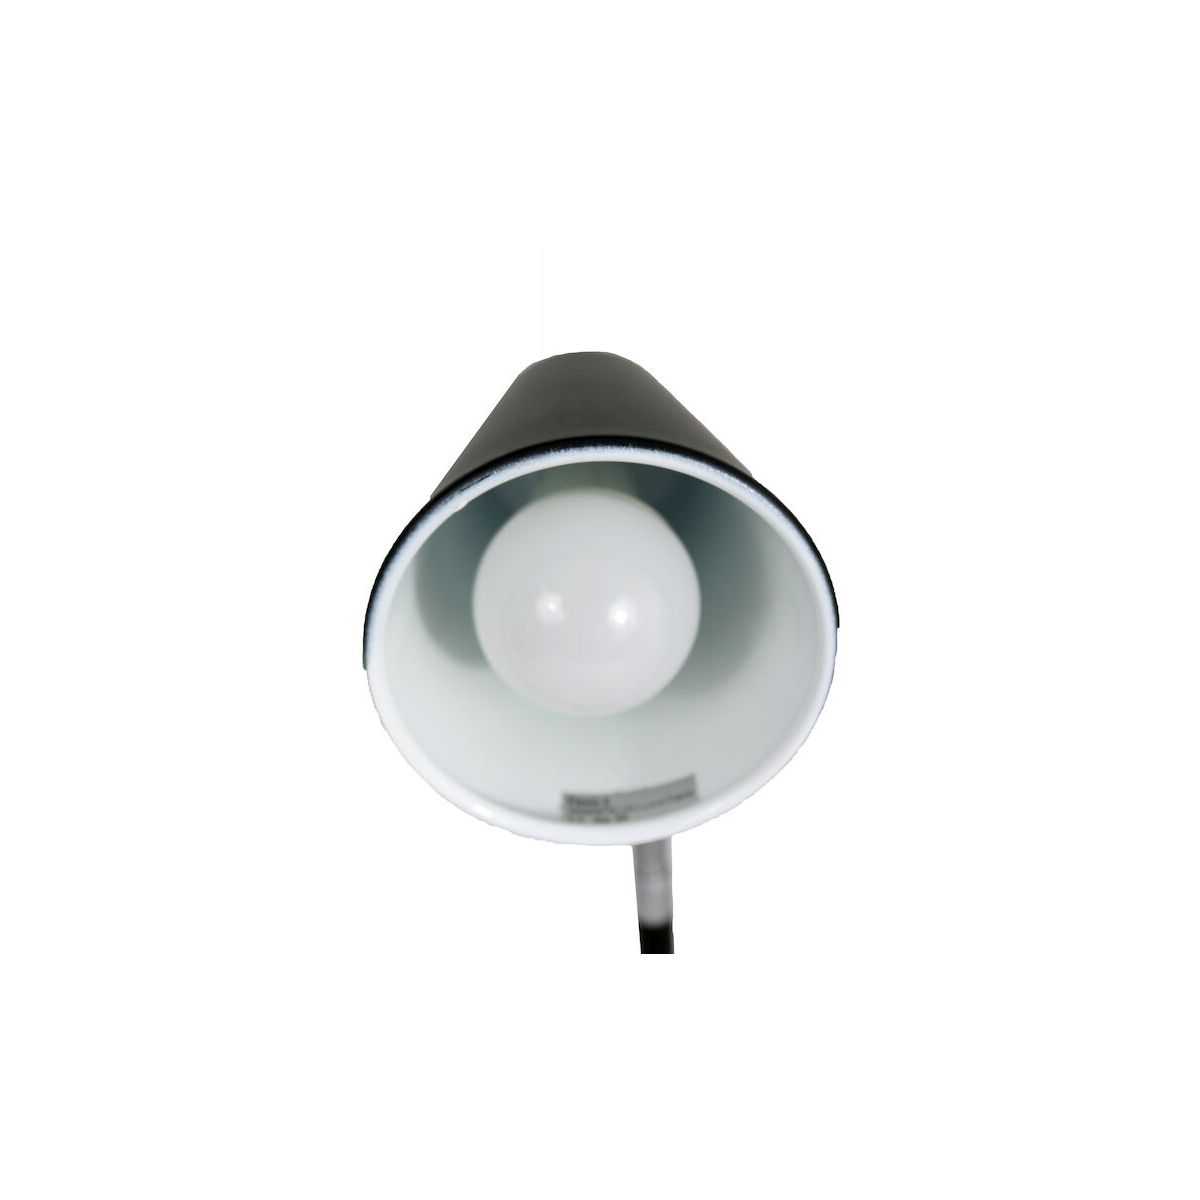 Lampka biurowa Flexio 2.0 LED CZARNA Unilux (400093687)